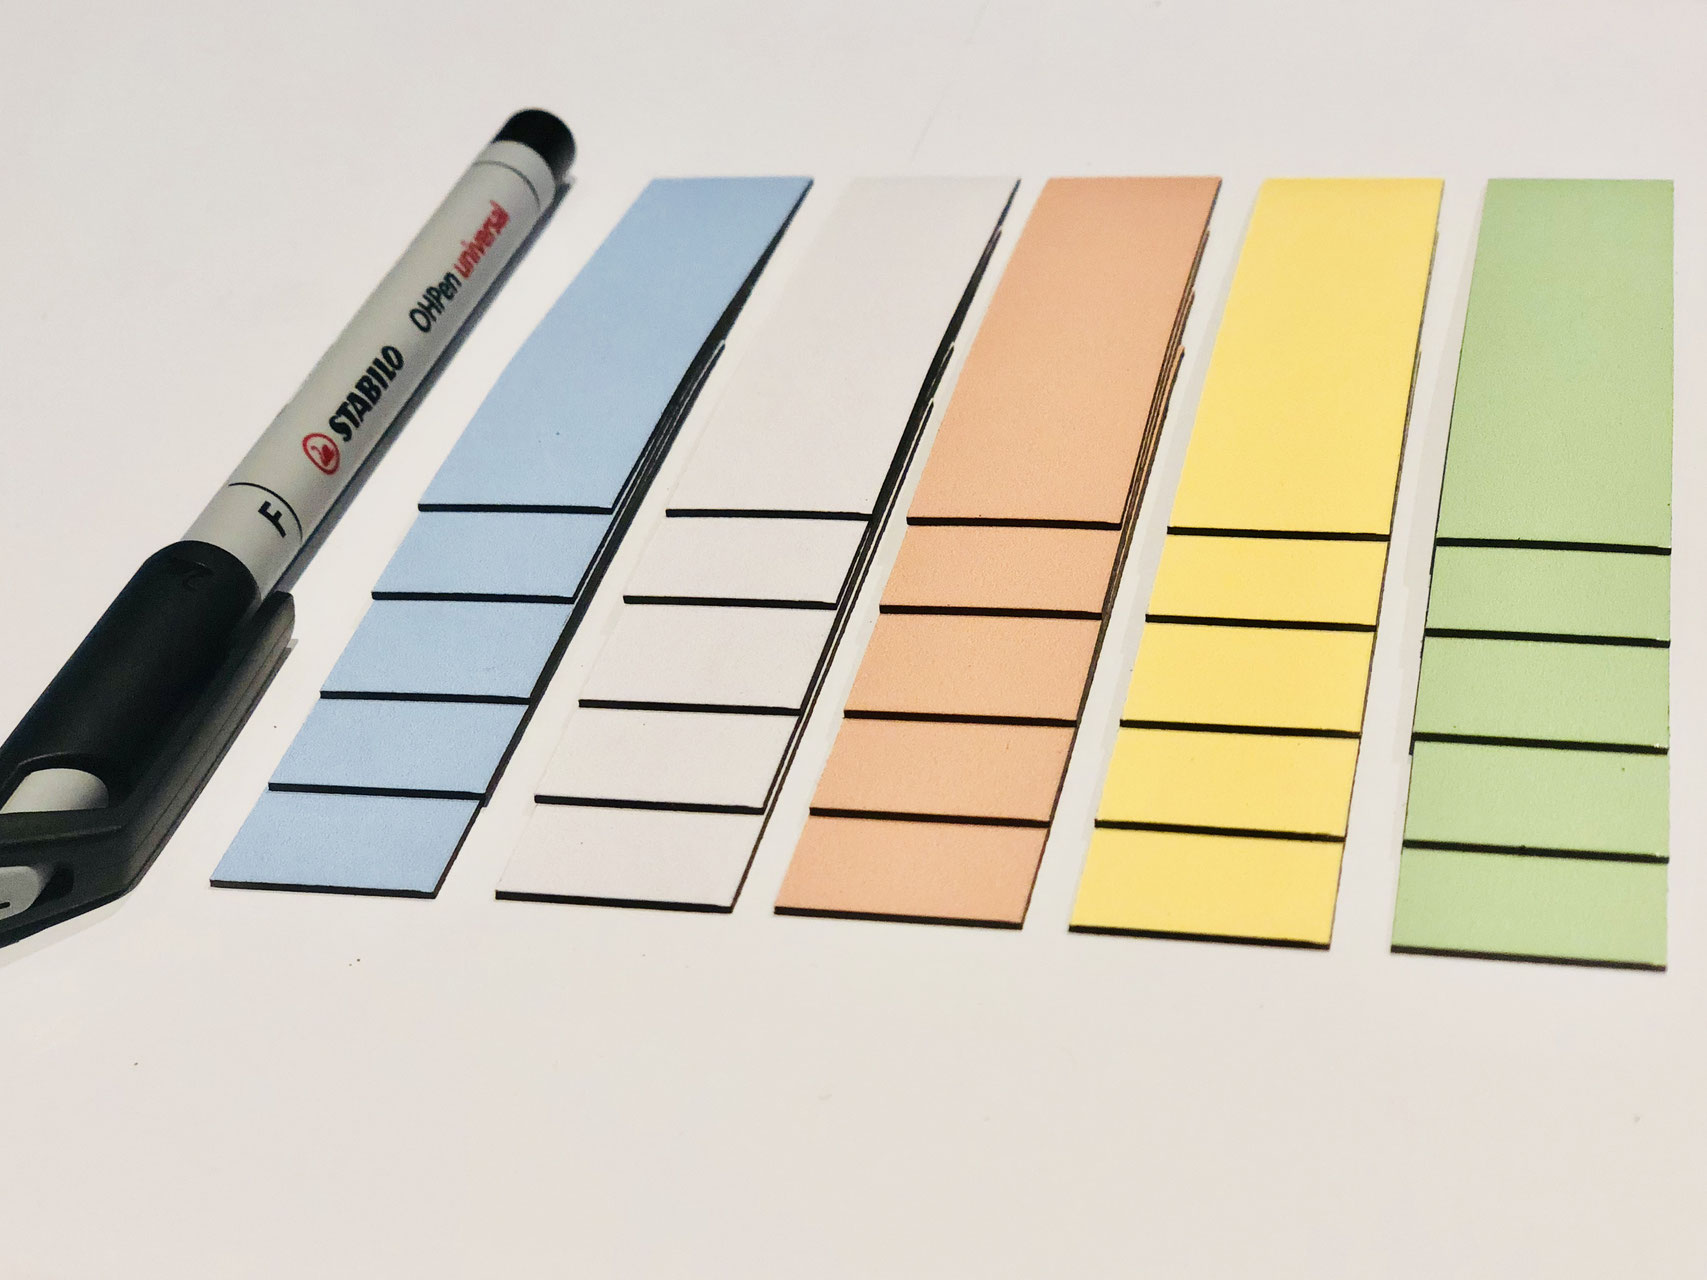 Mix Kanban oder Lean mit farbigem Rahmen Agile 25 Beschreibbare Magnete 7,5 x 7,5 cm mit Whiteboard marker für Scrum 5 Farben 